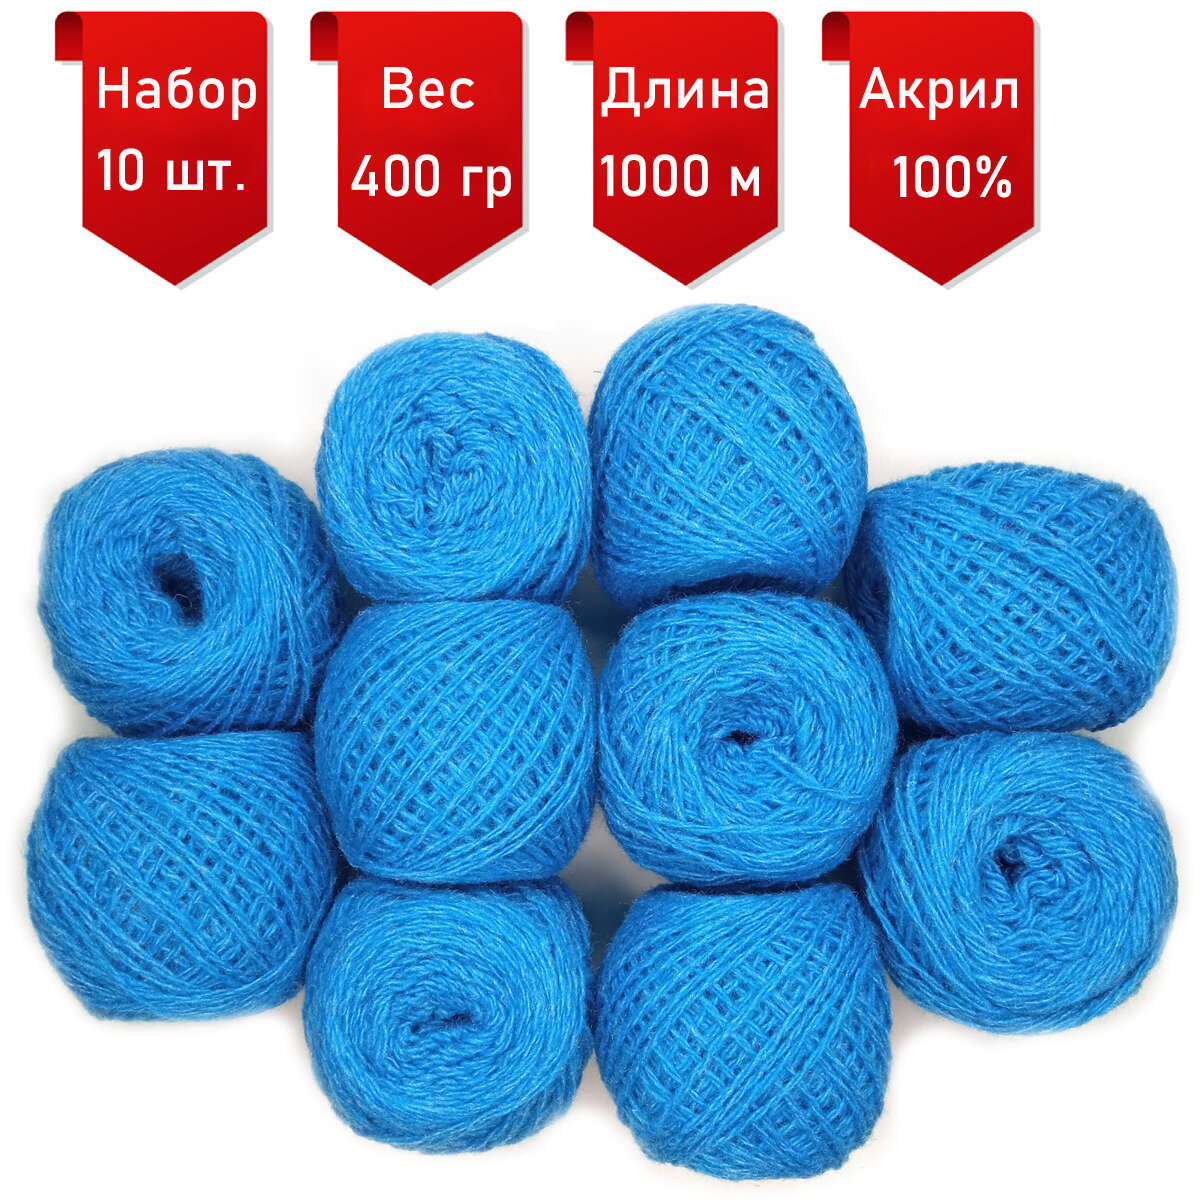 Пряжа для ручного вязания в клубочках (10 штук) (состав: акрил шерстяного типа). Один моток 40г/100м (Небесный).